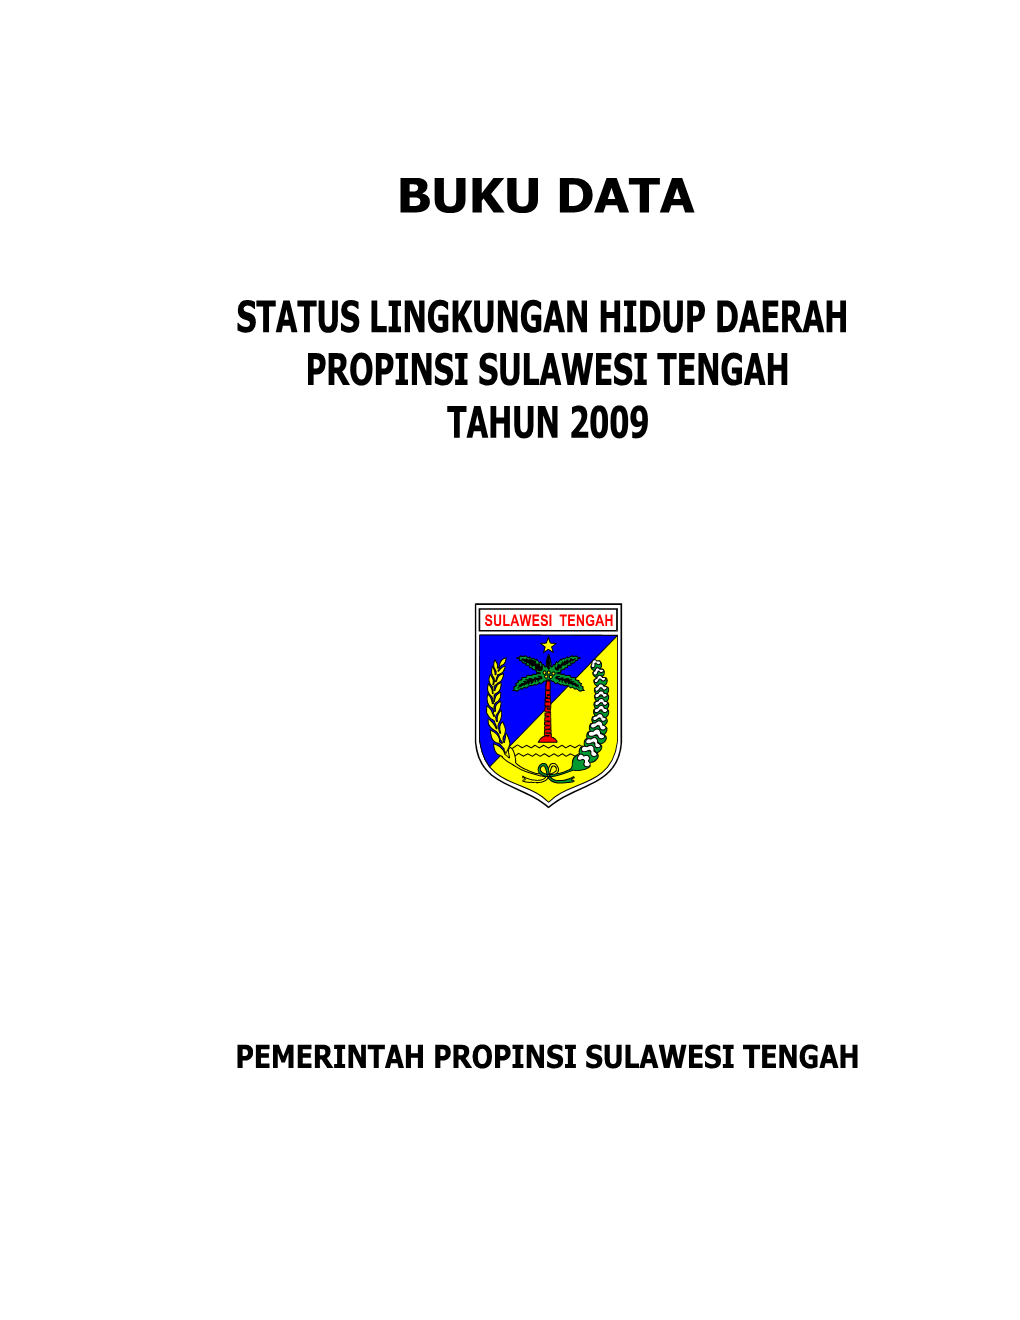 Buku Data Sulawesi Ten